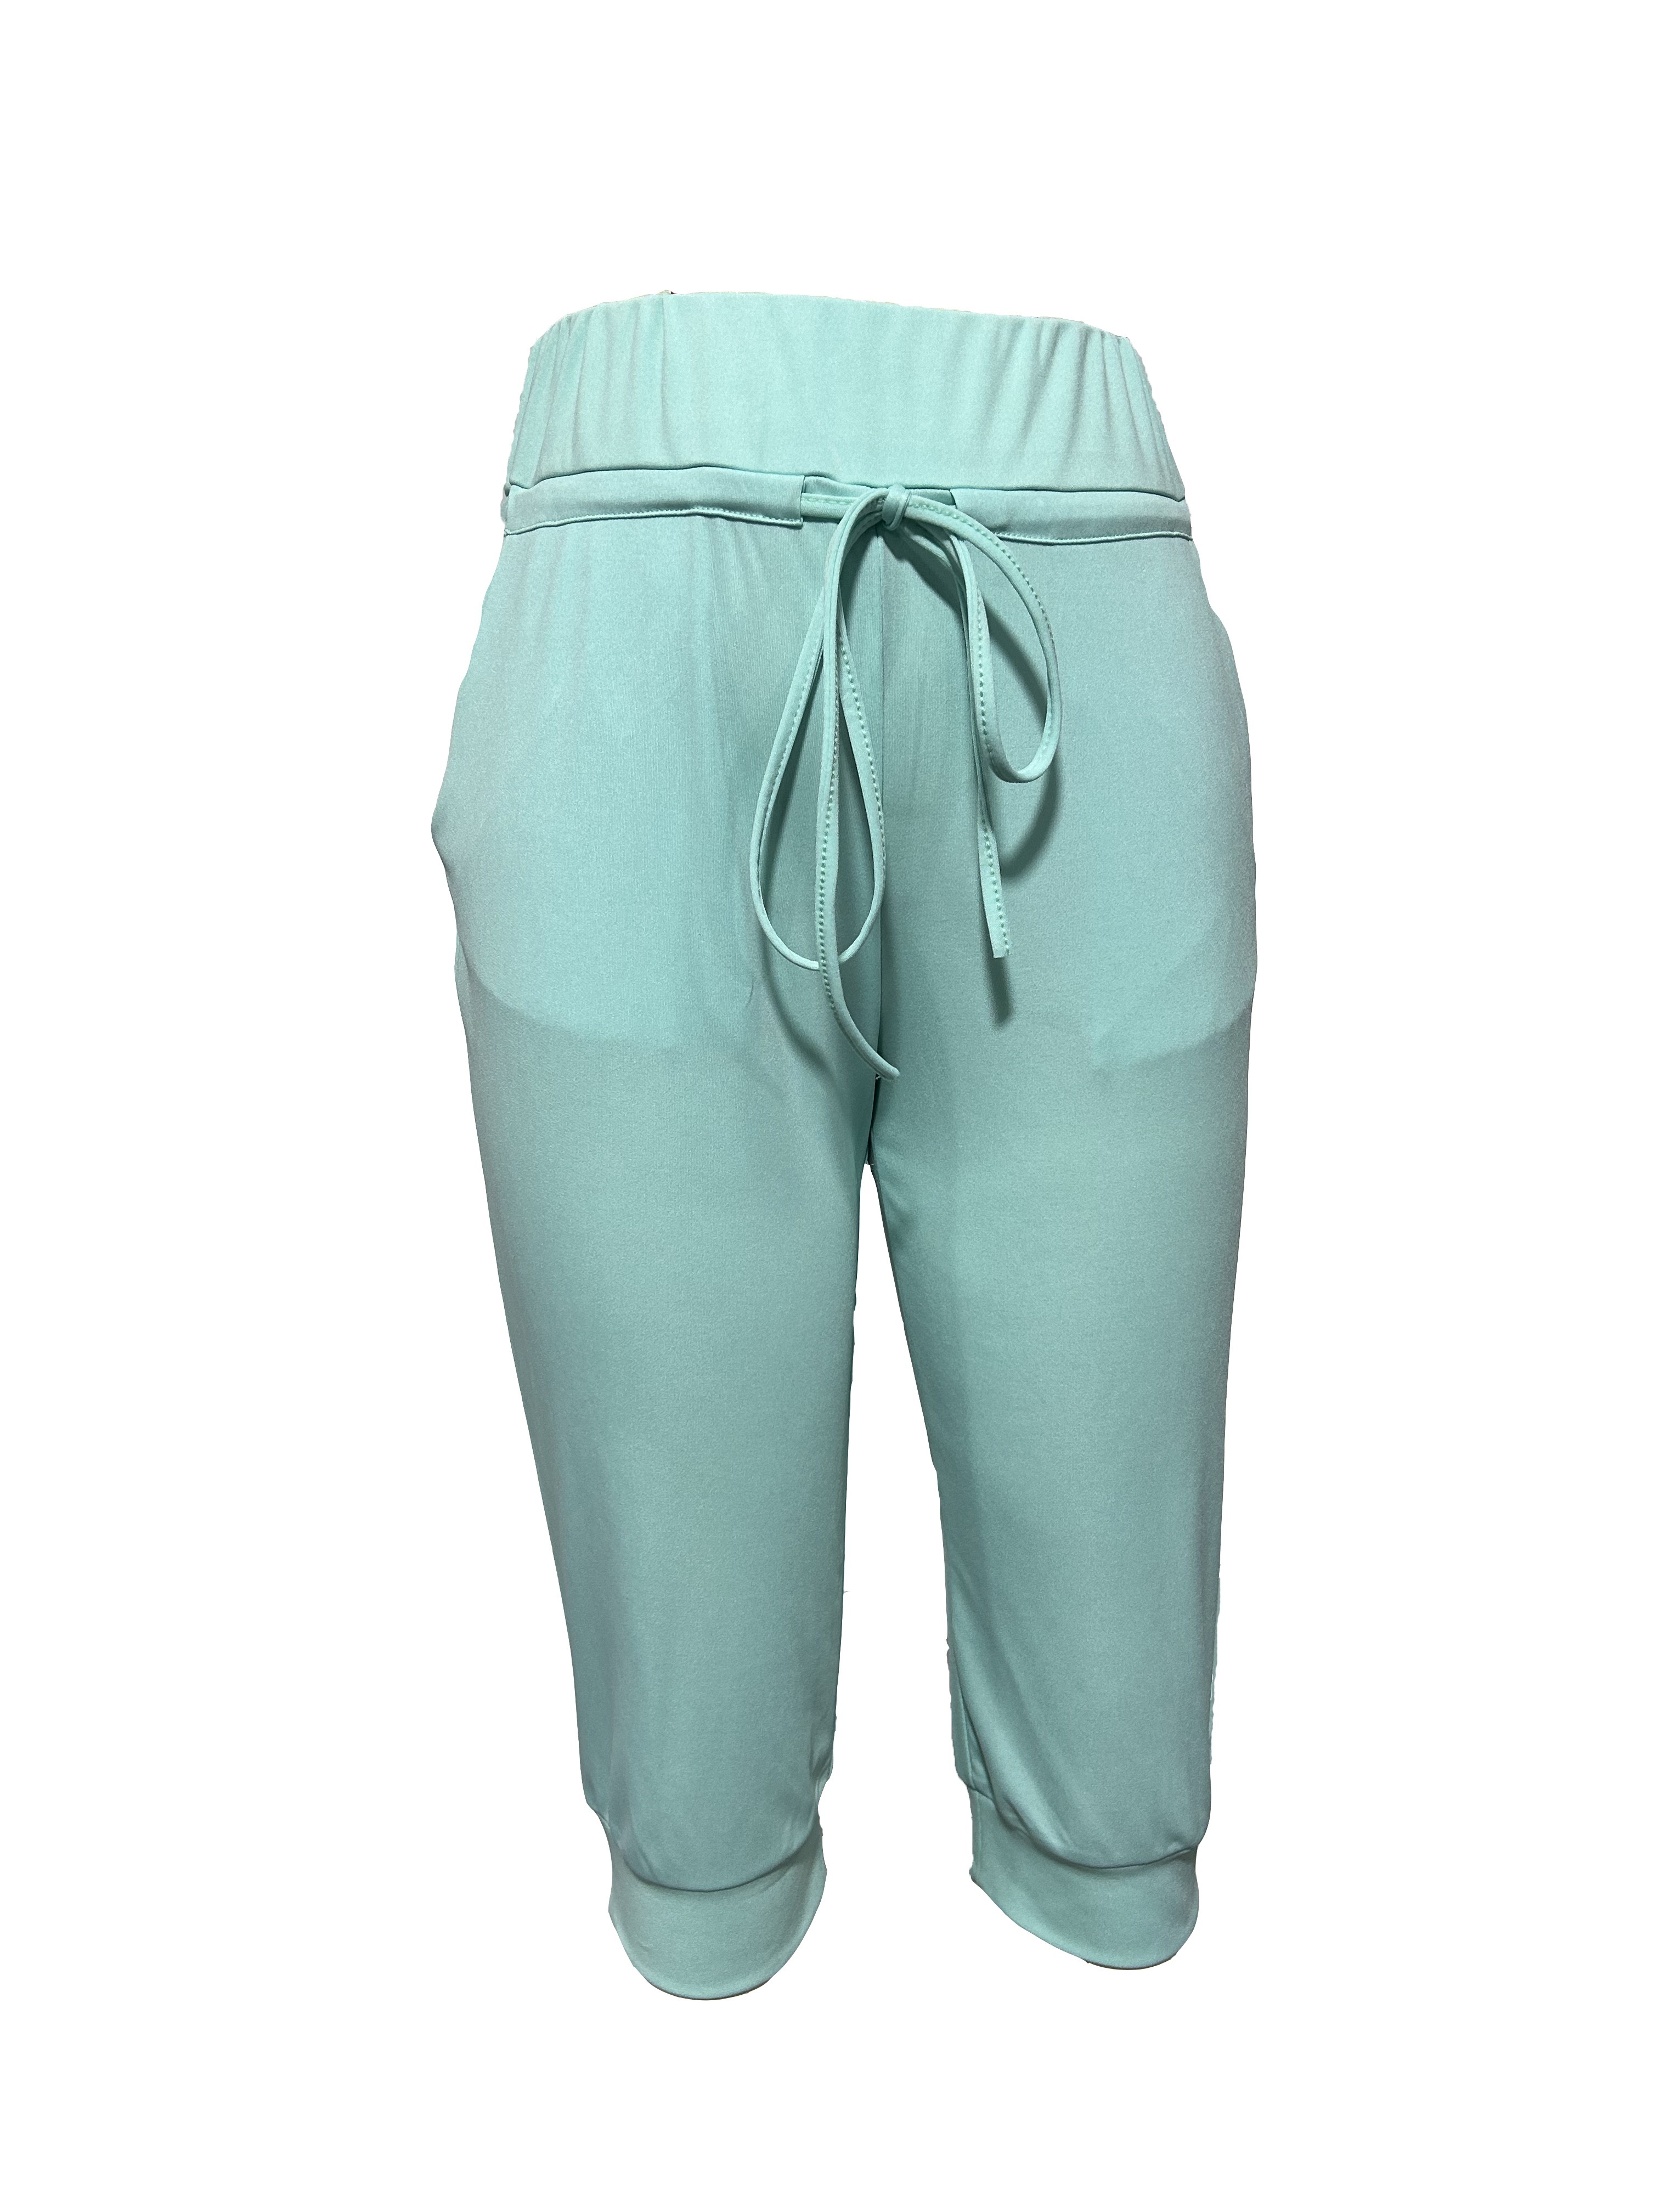 Dellytop Womens Casual Elastic Waist Solid Color 3/4 Summer Capri Pants